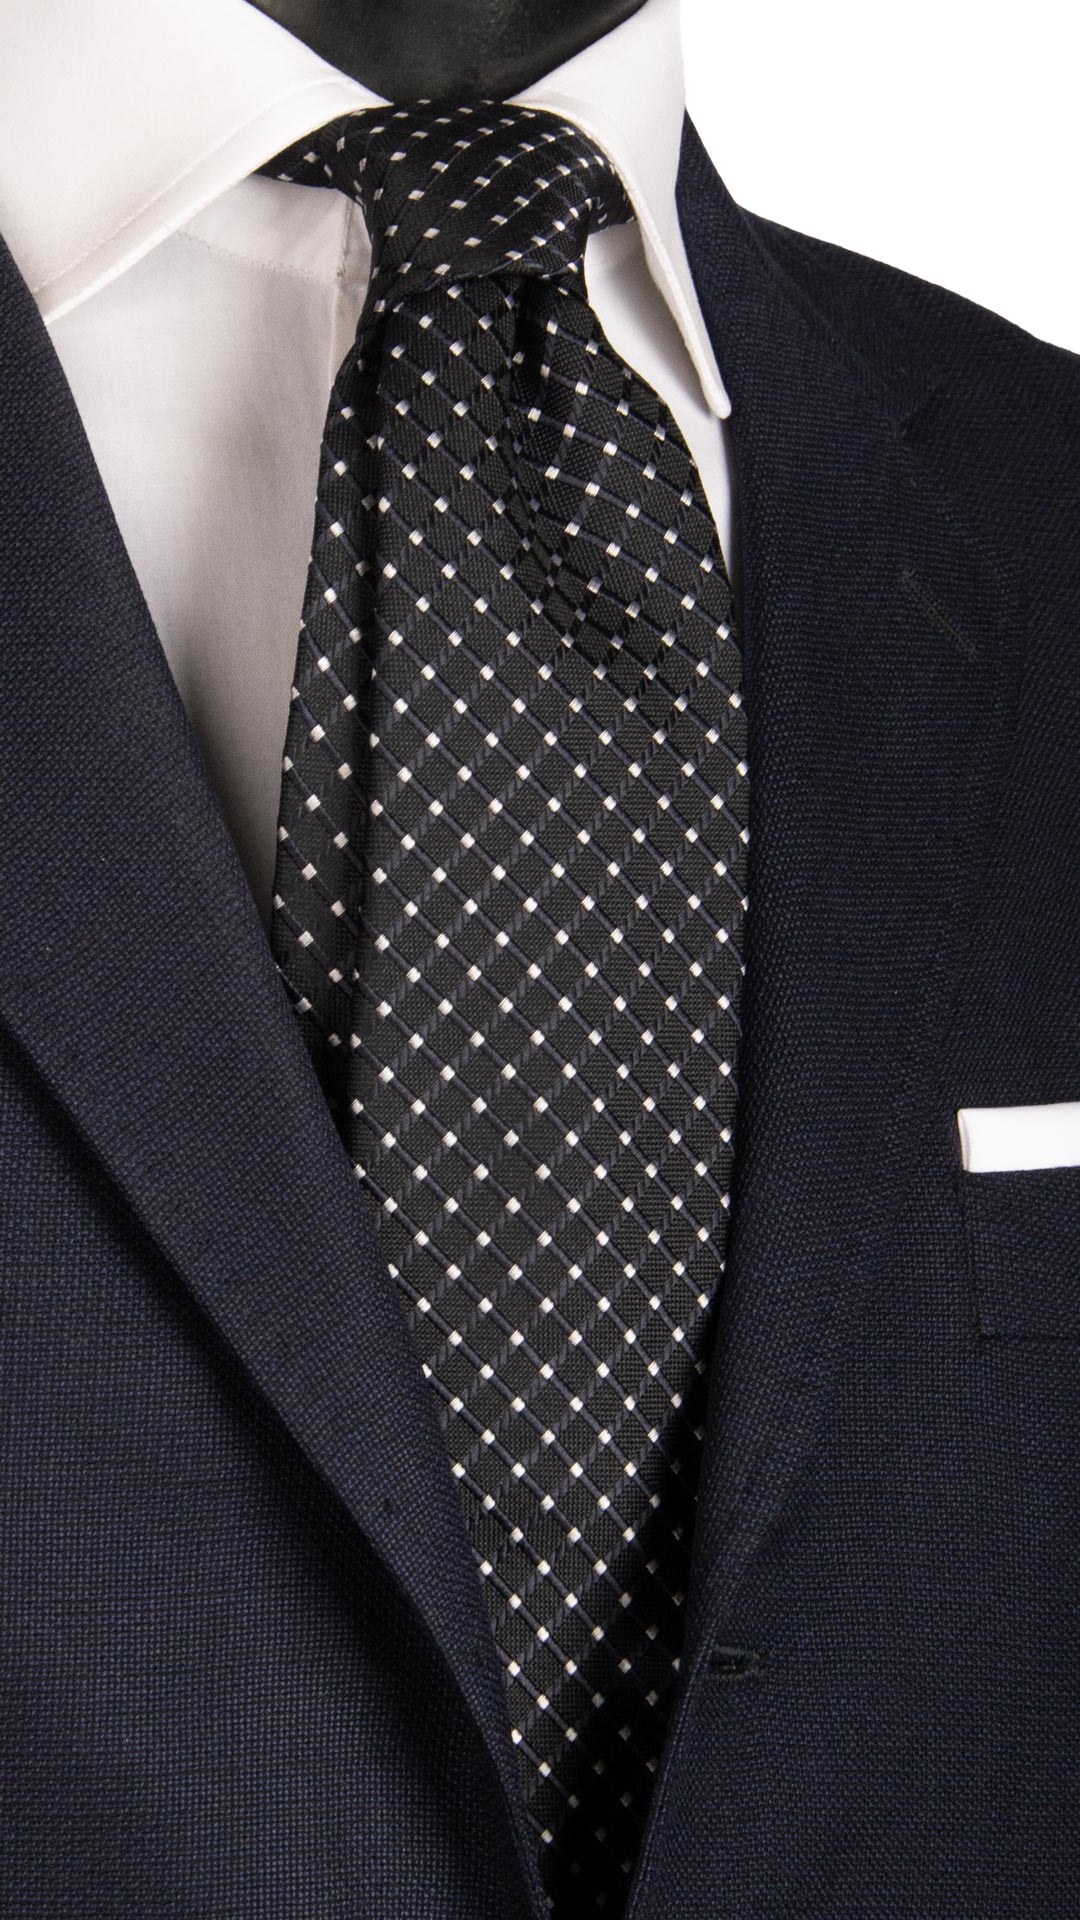 Cravatta da Cerimonia di Seta Fantasia a Quadri Blu Grigio Argento Made in Italy Graffeo Cravatte